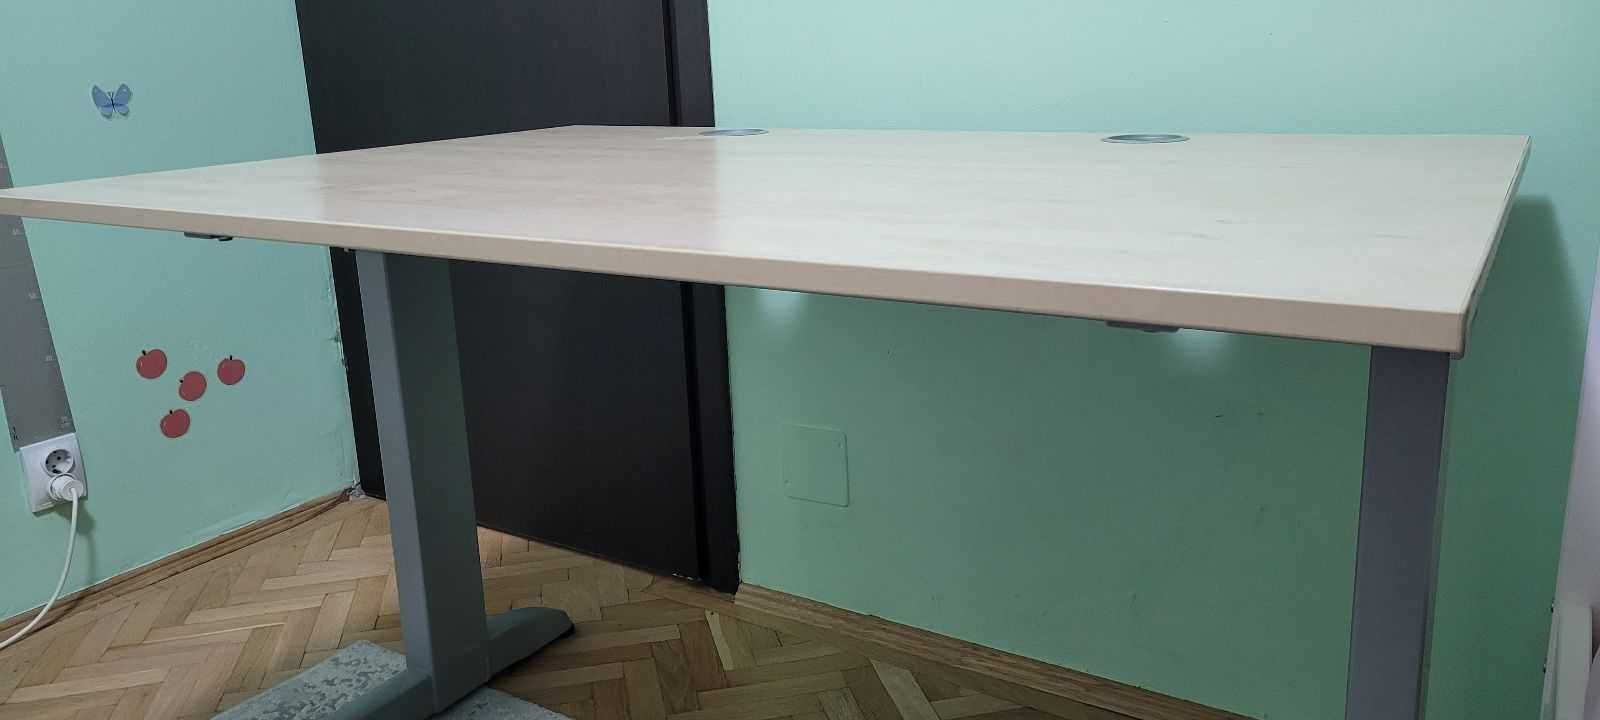 Masa birou, 120x80cm, aproape nou